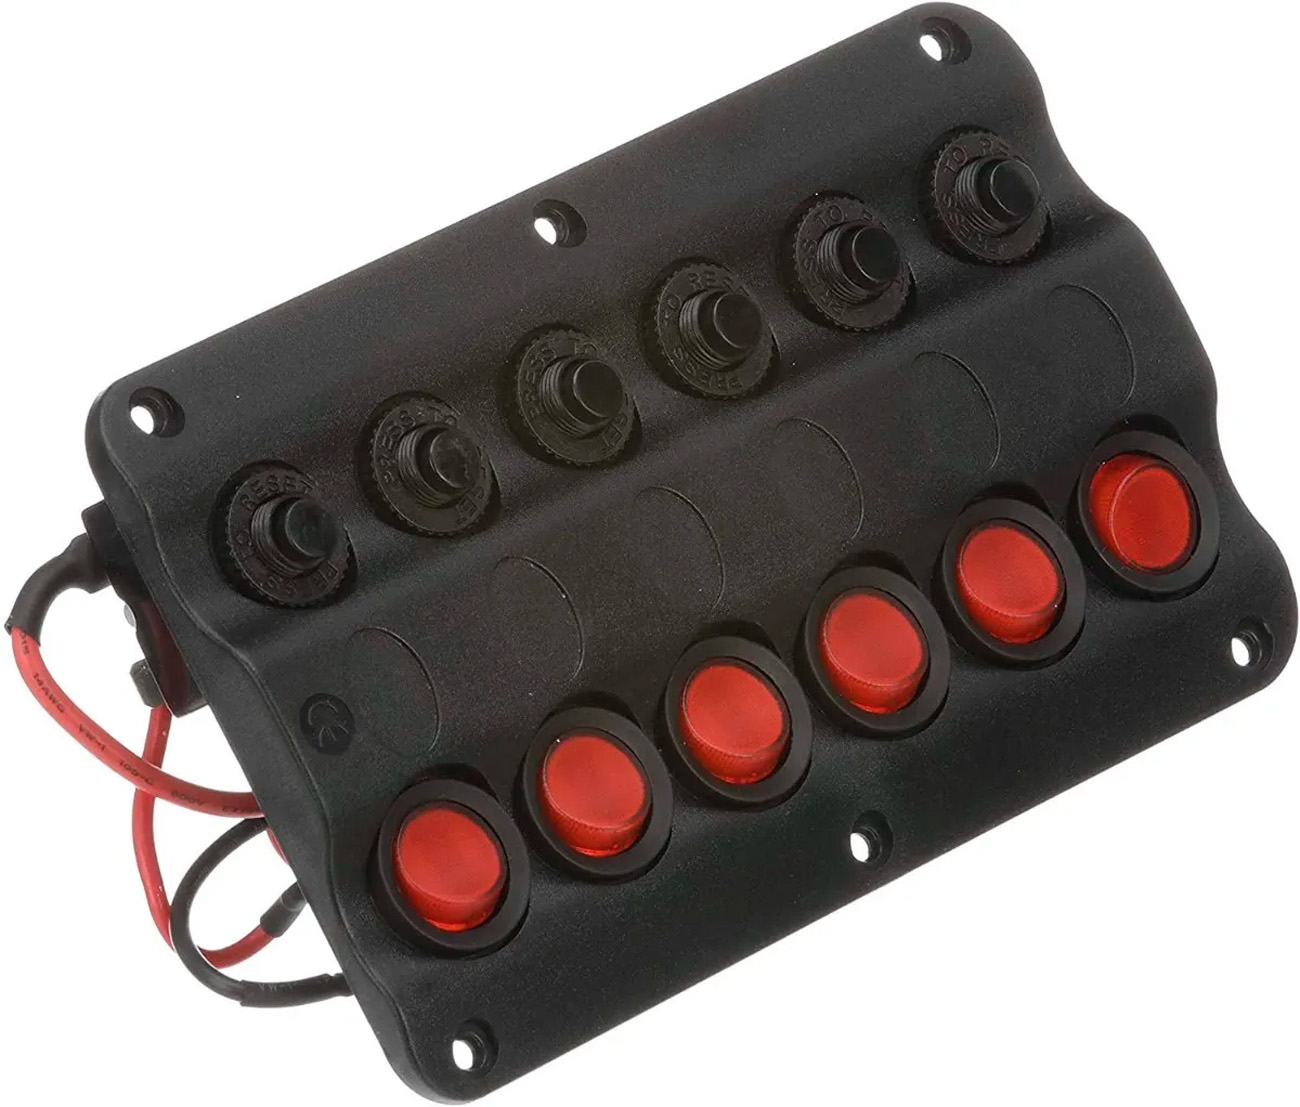 Painel Elétrico de Comando 12V com 6 Botões (Funções) Seachoice com LED e Disjuntores Fusíveis p/ Barcos